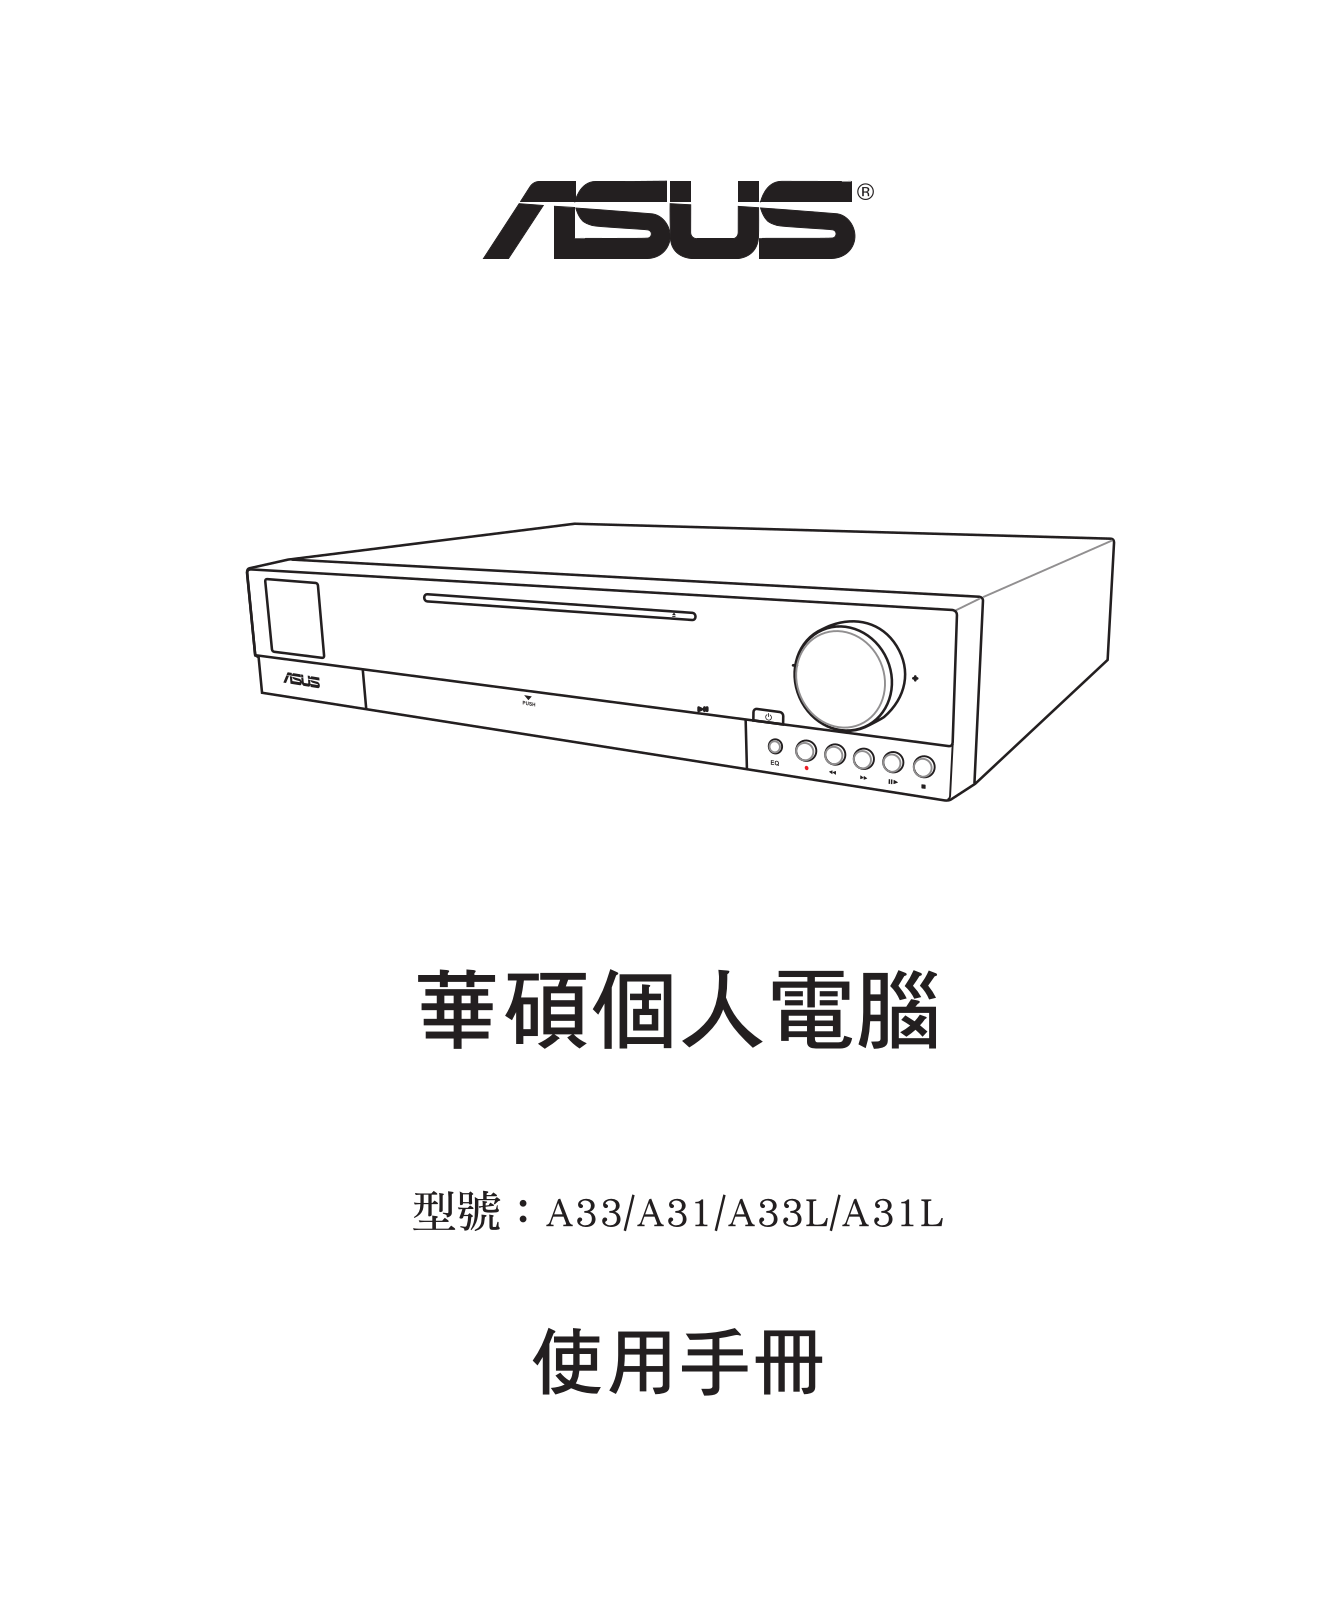 Asus A33, A31, A33L, A31L User Manual